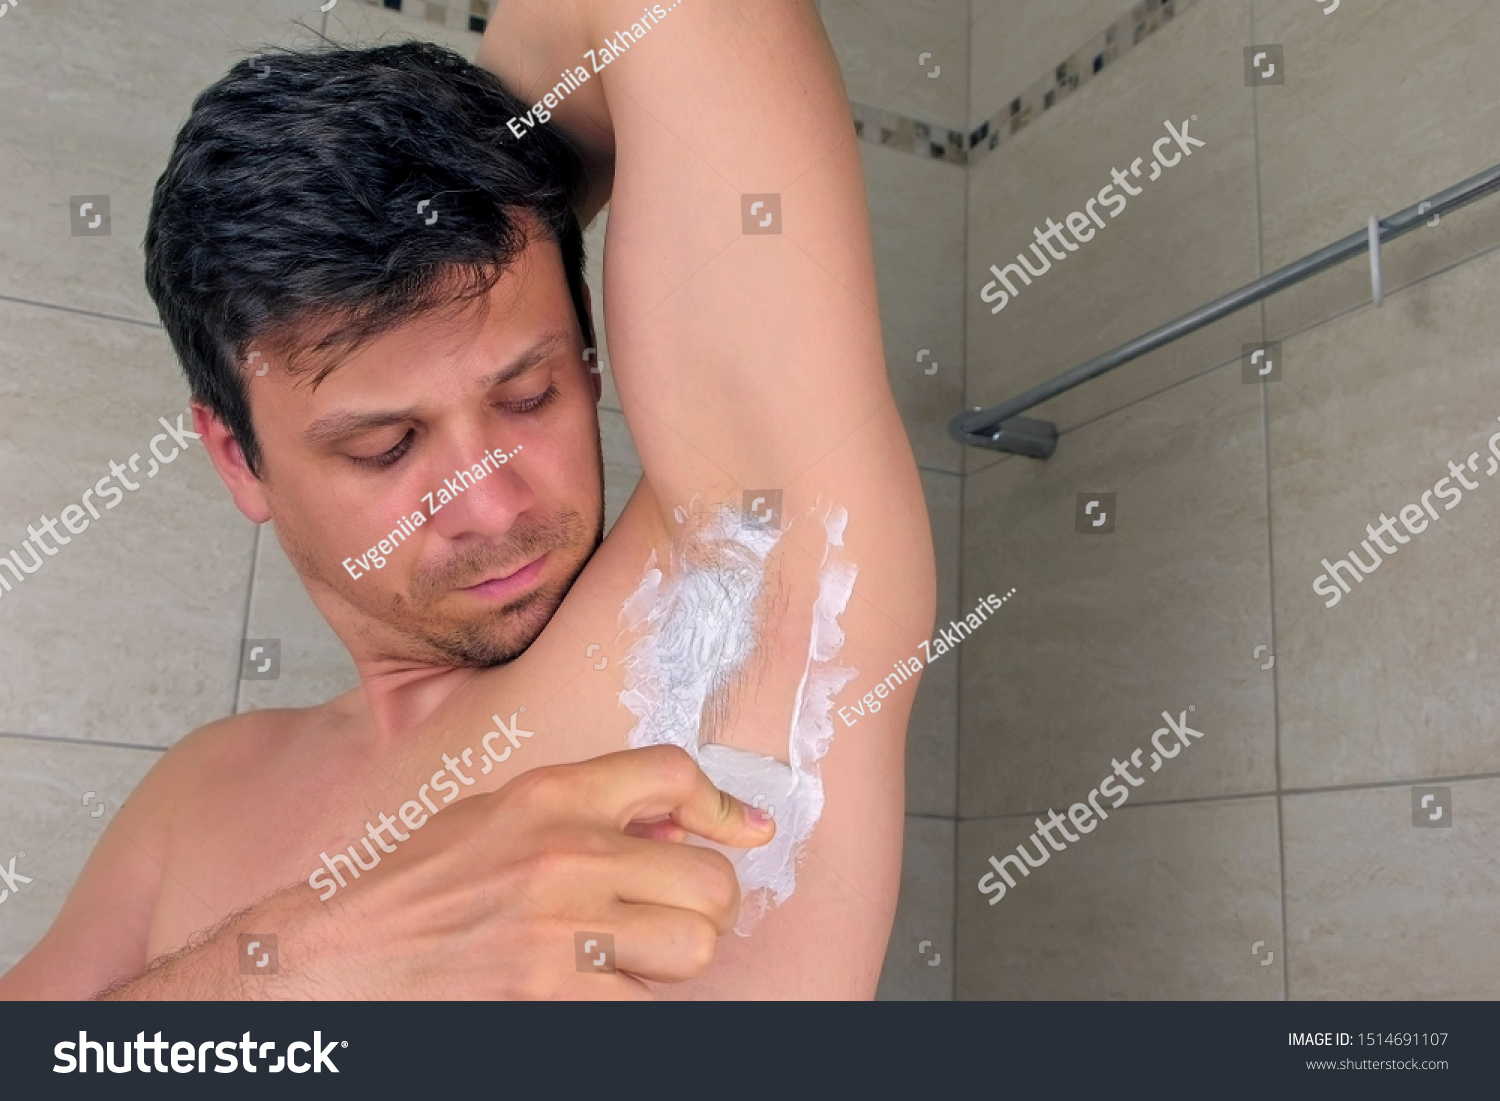 бреют ли мужчины член фото 43